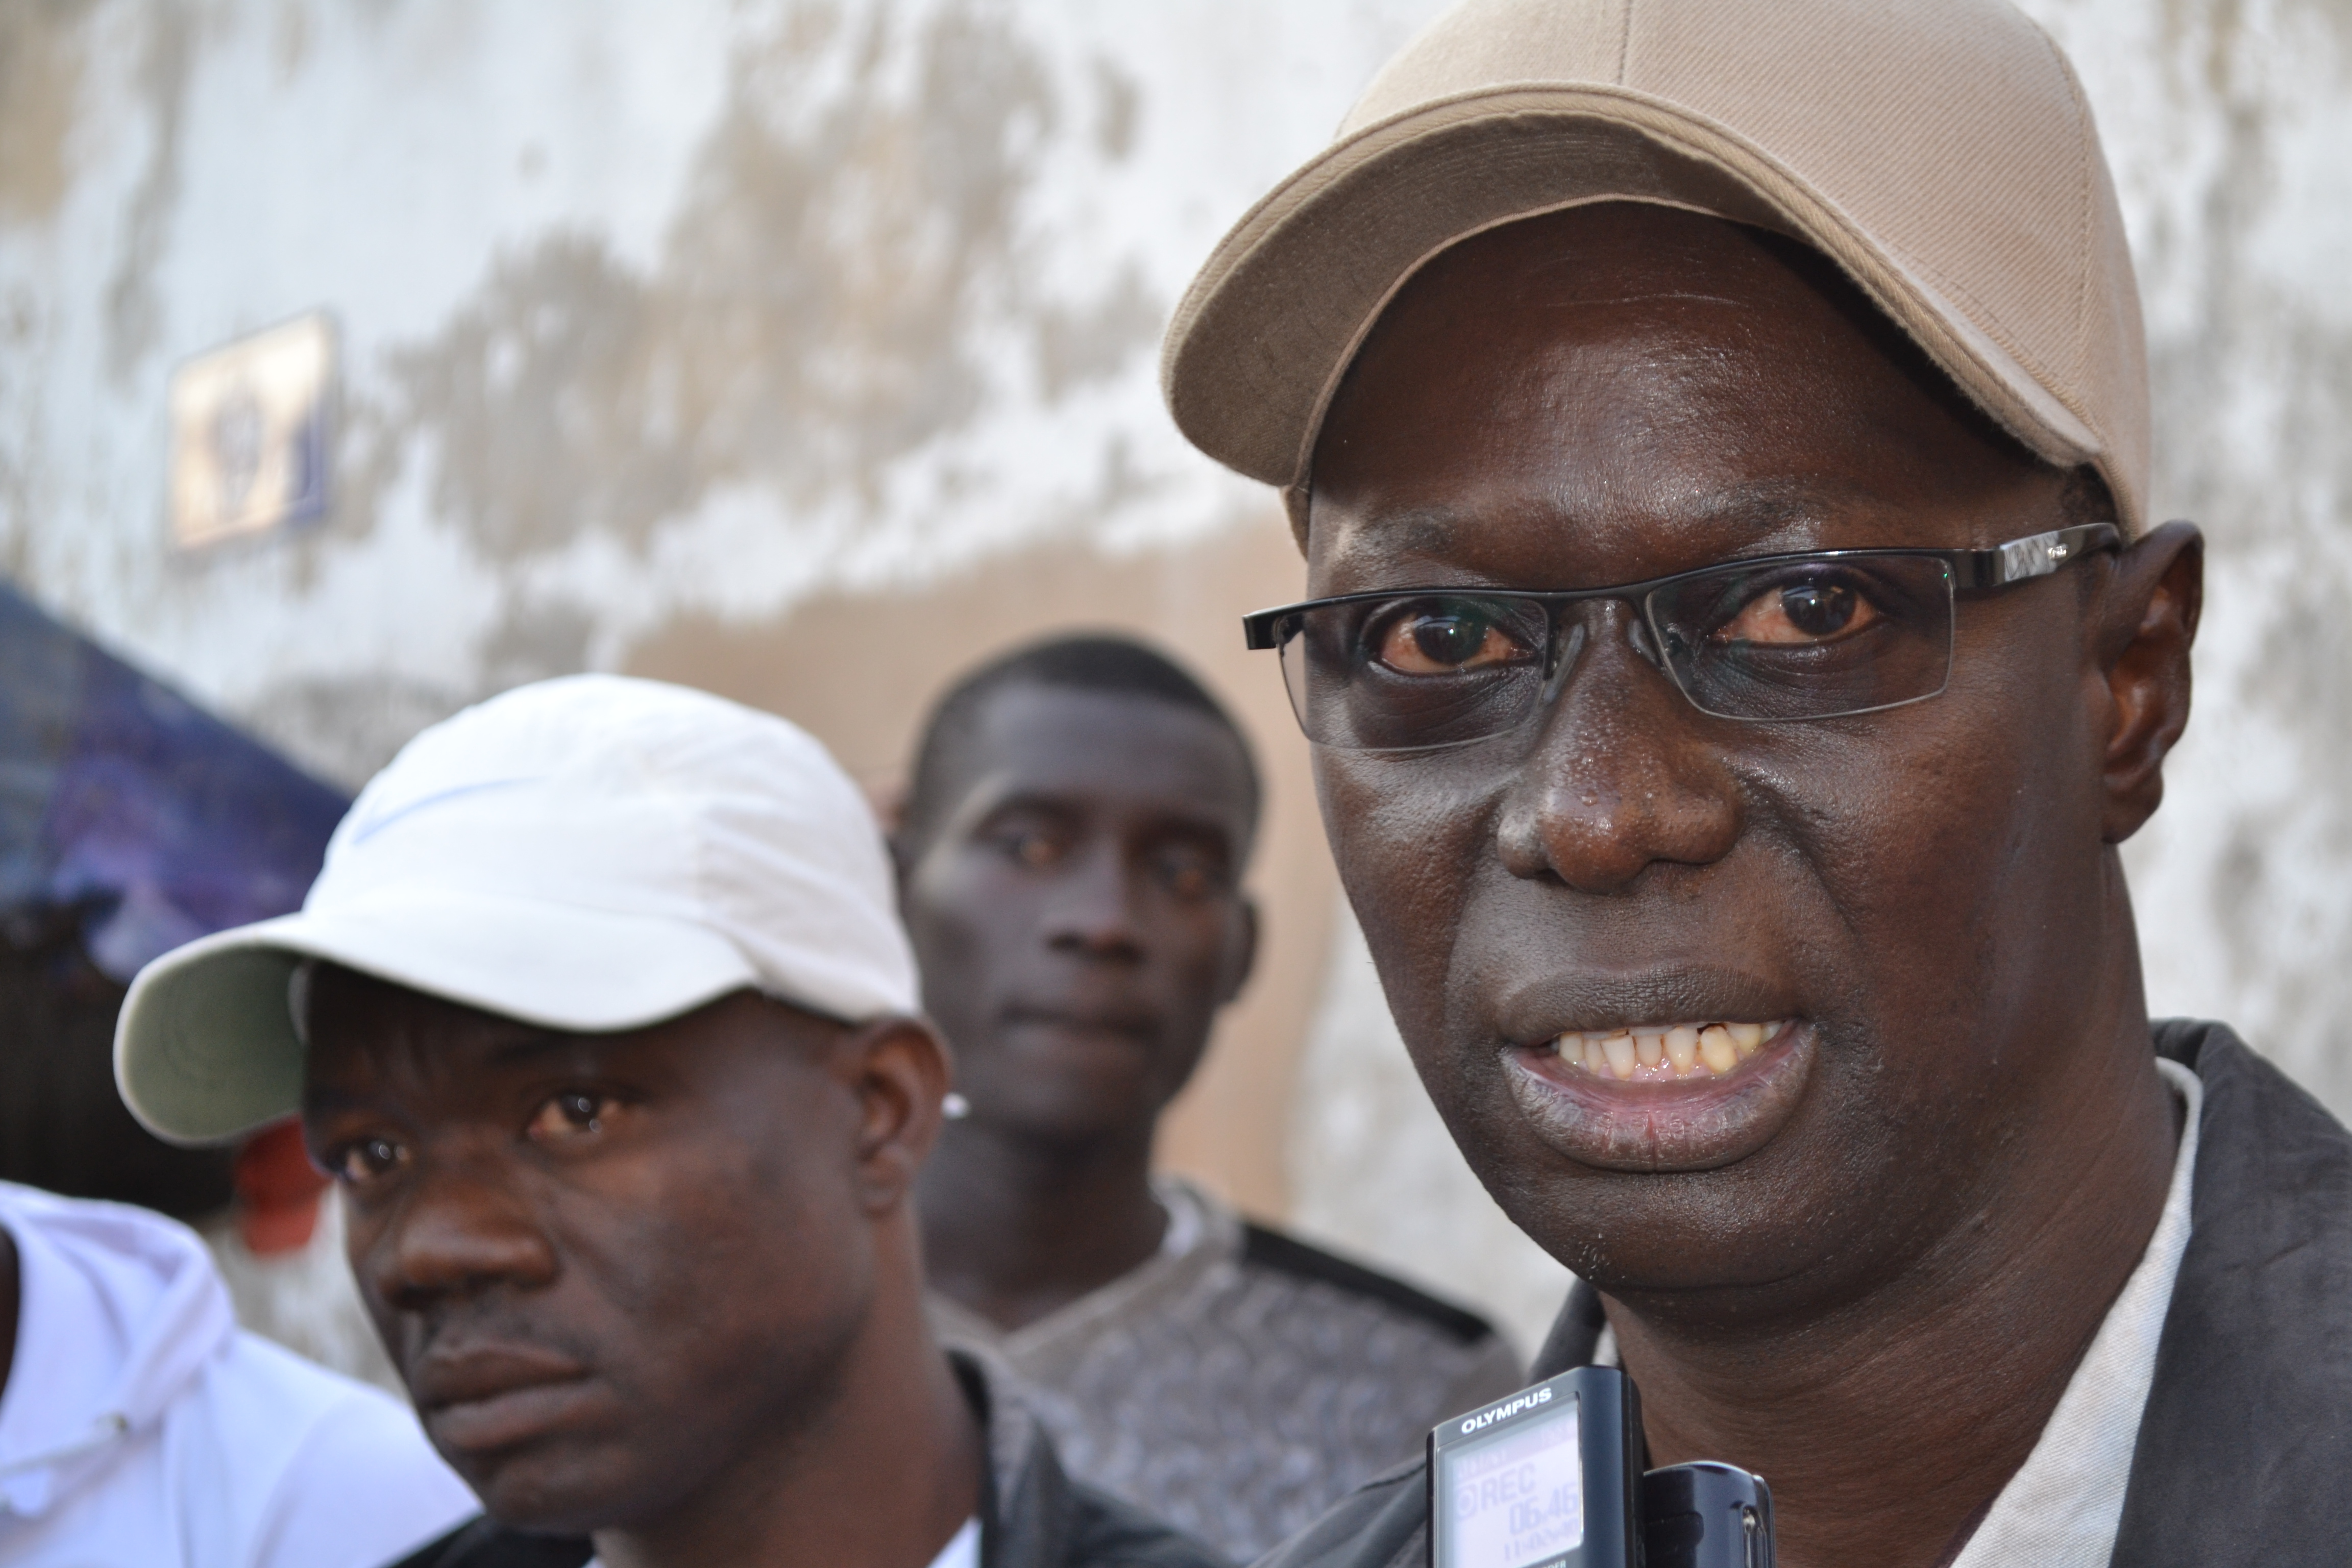 Bocar Diongue: "Amadou Ba peine à se faire un ancrage local aux Parcelles"